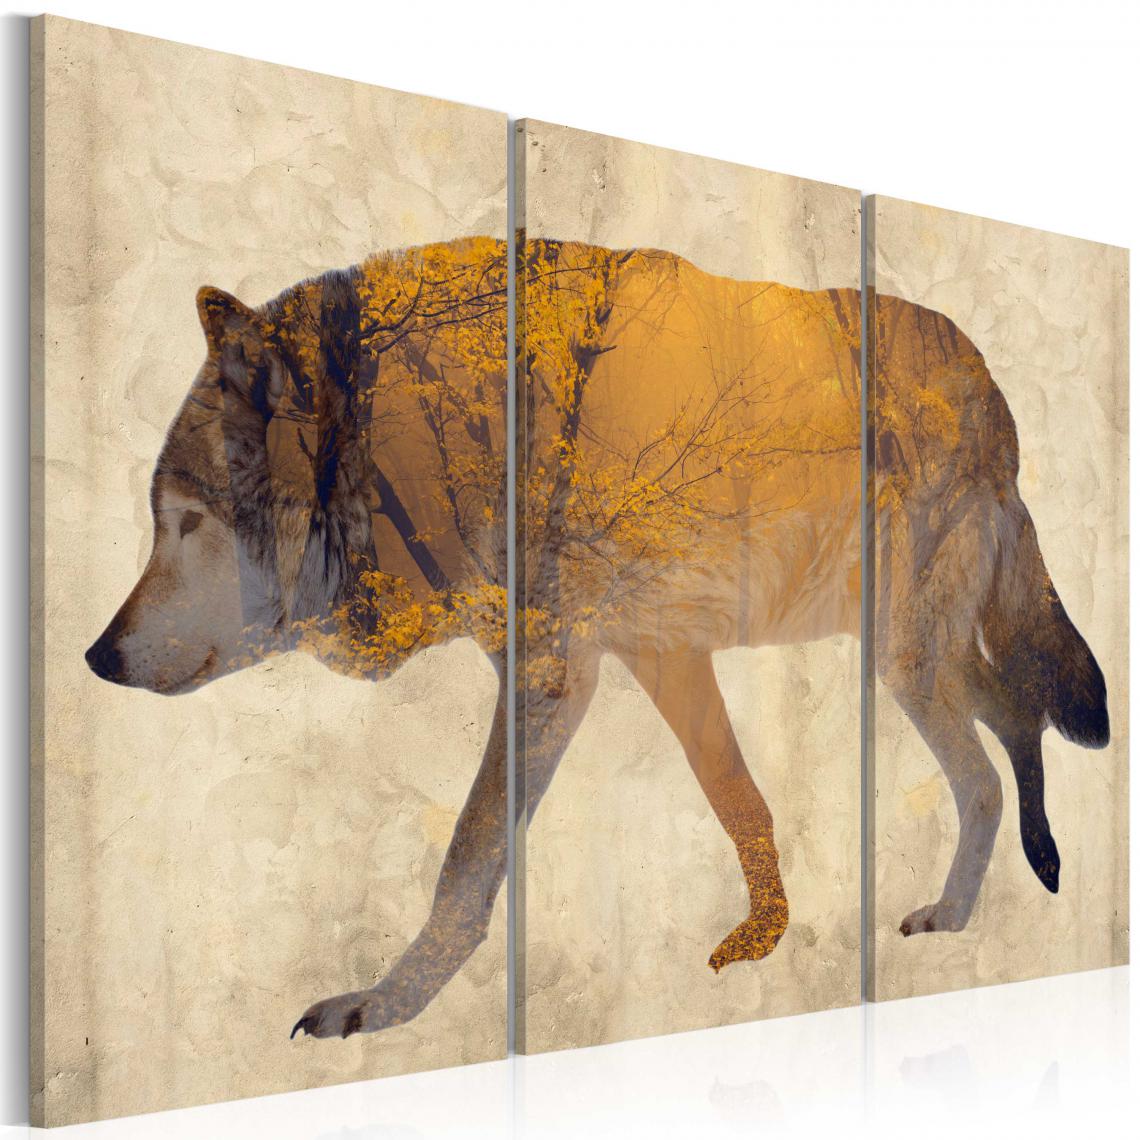 Decoshop26 - Tableau sur toile en 3 panneaux décoration murale image imprimée cadre en bois à suspendre Le loup errant 120x80 cm 11_0002436 - Tableaux, peintures